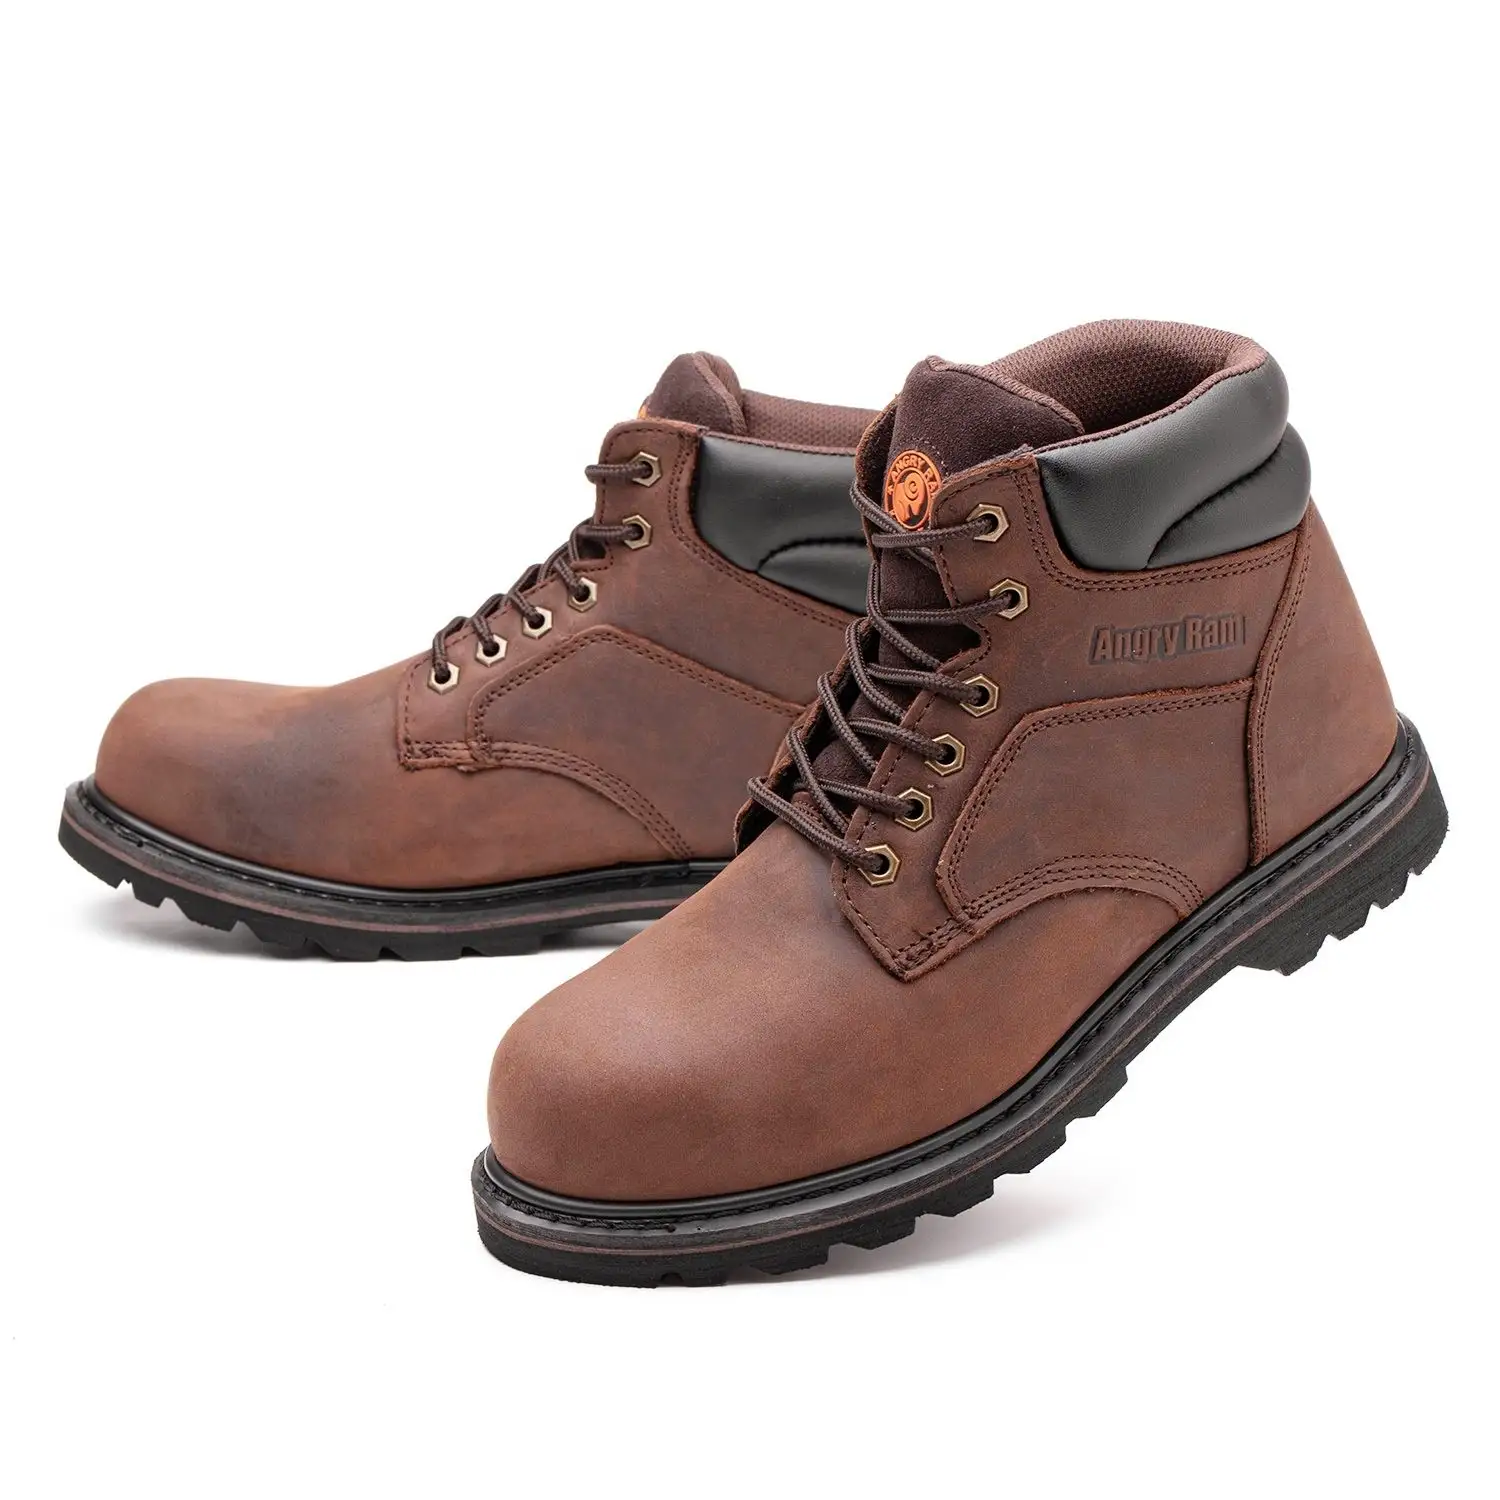 Ёмкость, UT высокое качество Новое поступление водонепроницаемый Работа кожаные туфли со стальным носком, безопасная обувь для мужчин лесной спецобувь ботинки для мужчин